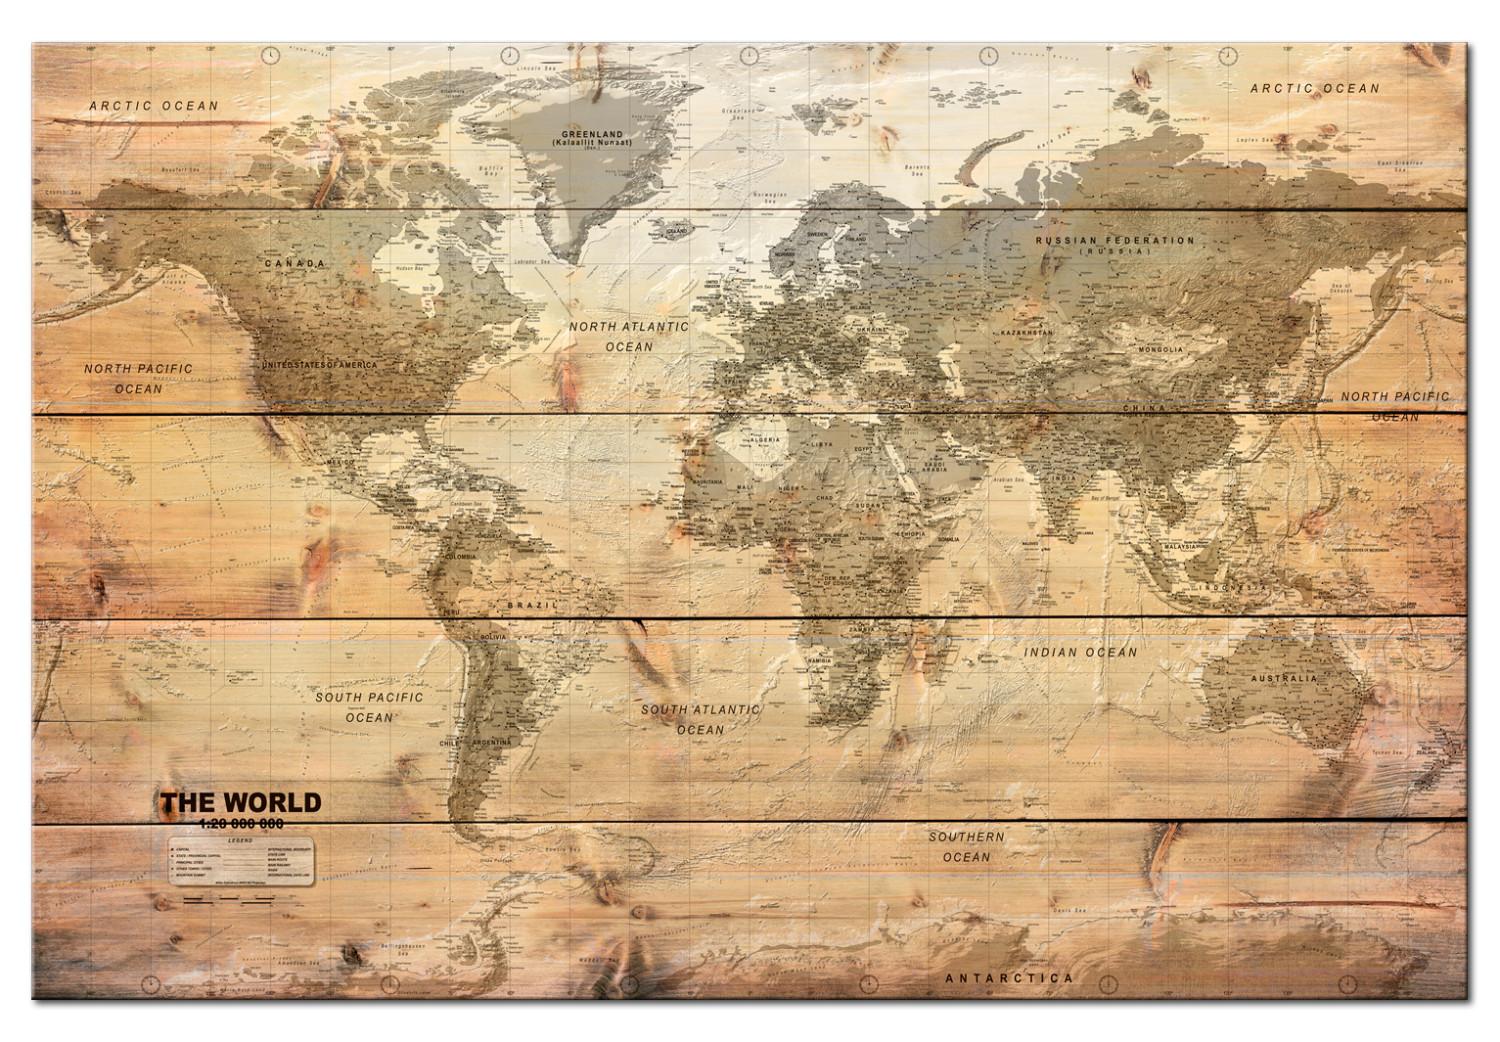 Tablero decorativo en corcho World Map: Boards [Cork Map]